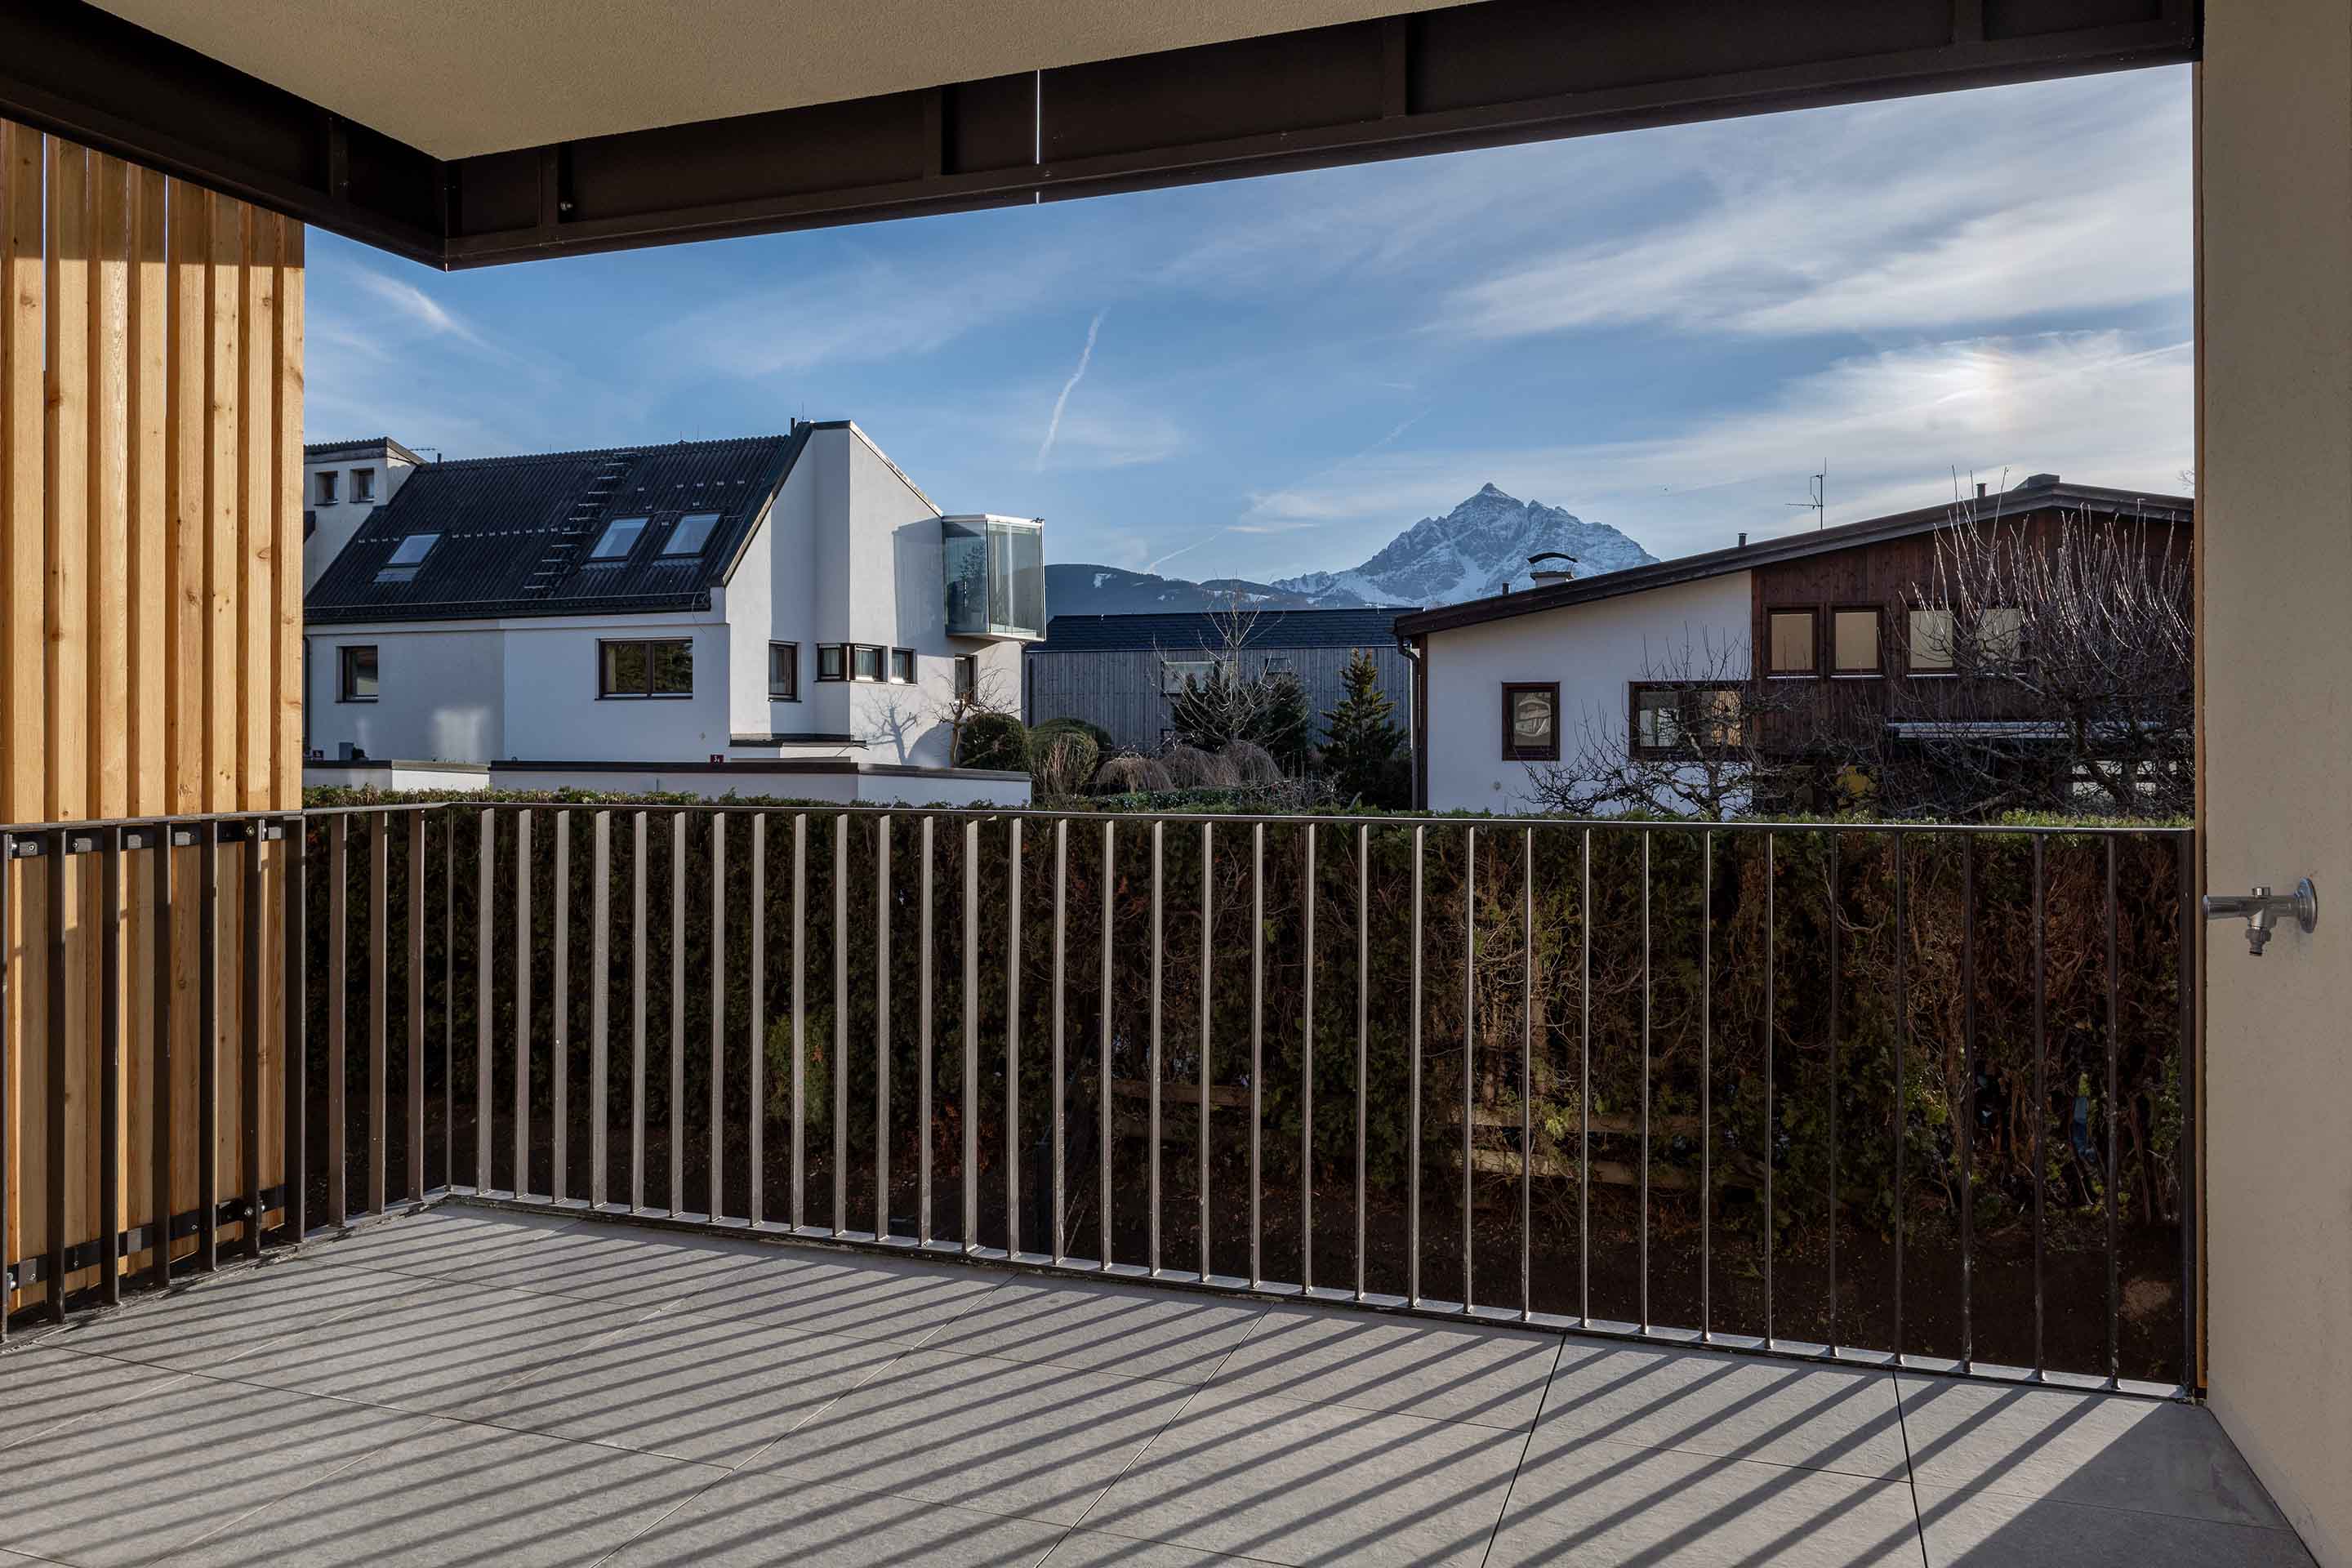 Foto: Terrasse im Plateau Alpin mit traumhafter Aussicht